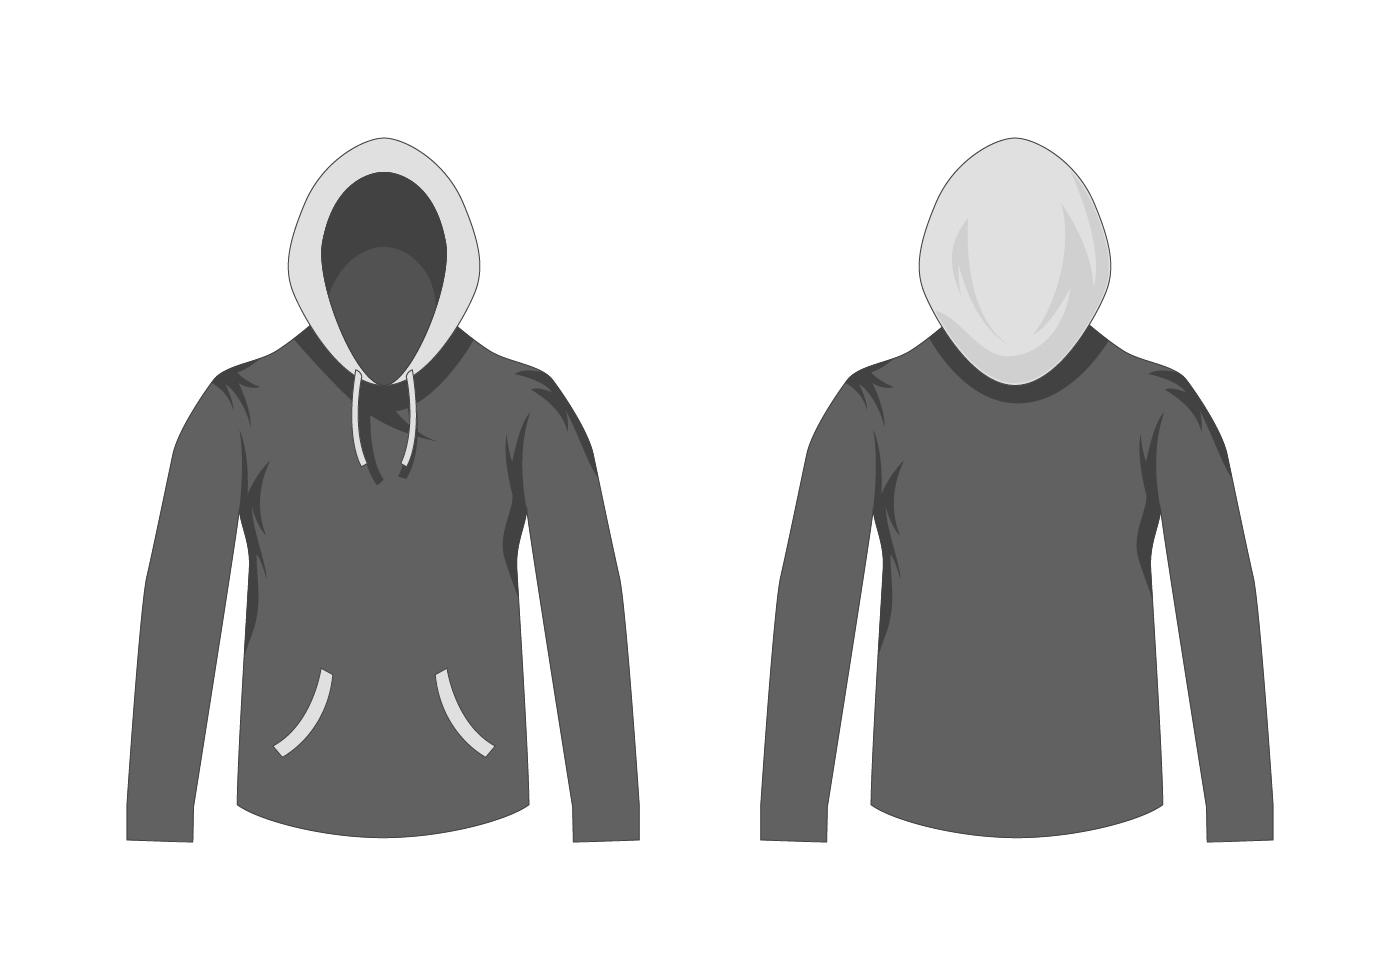 Download blank grey hooded sweatshirt template - Download Free Vectors, Clipart Graphics & Vector Art